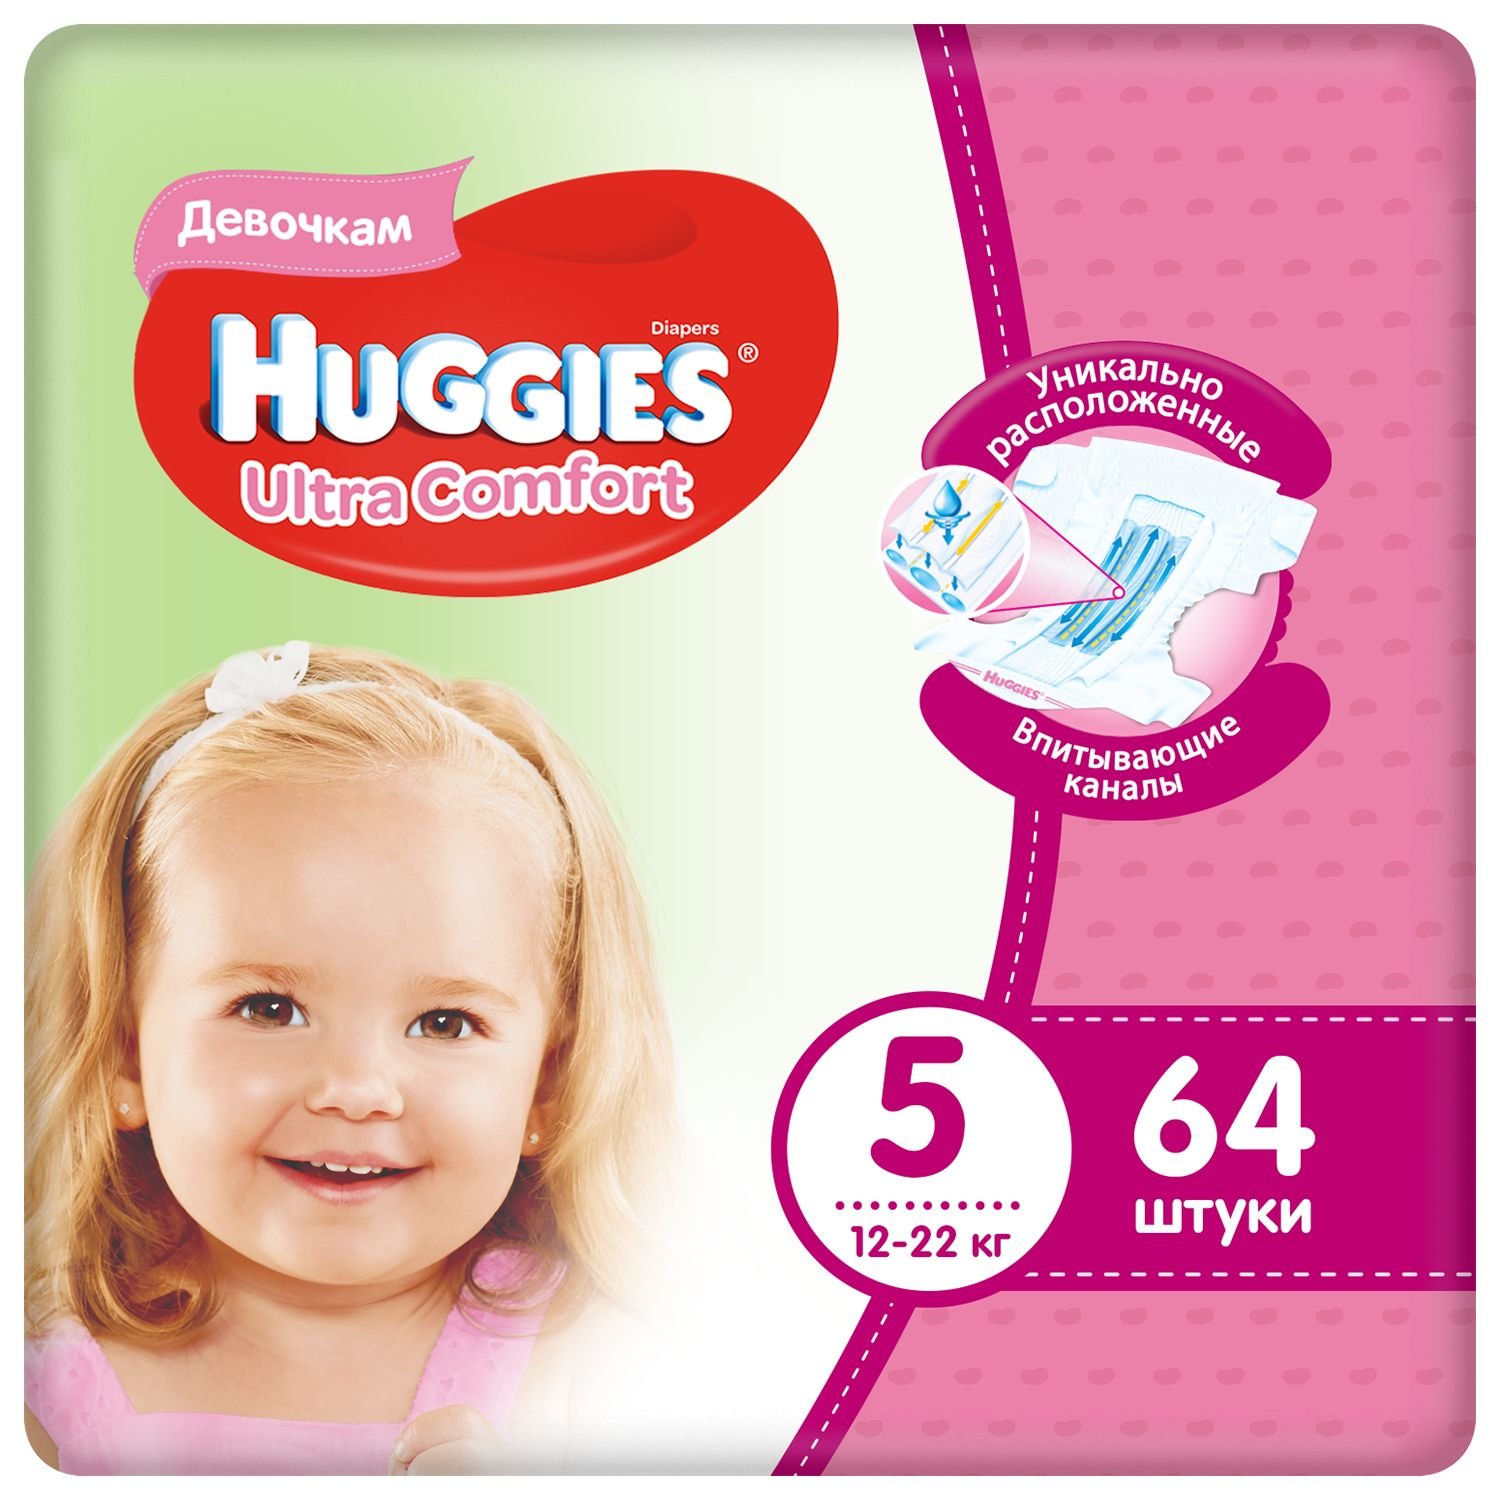 Huggies подгузники Ultra Comfort для девочек 5 (12-22 кг) 64 шт. Упаковка повреждена              